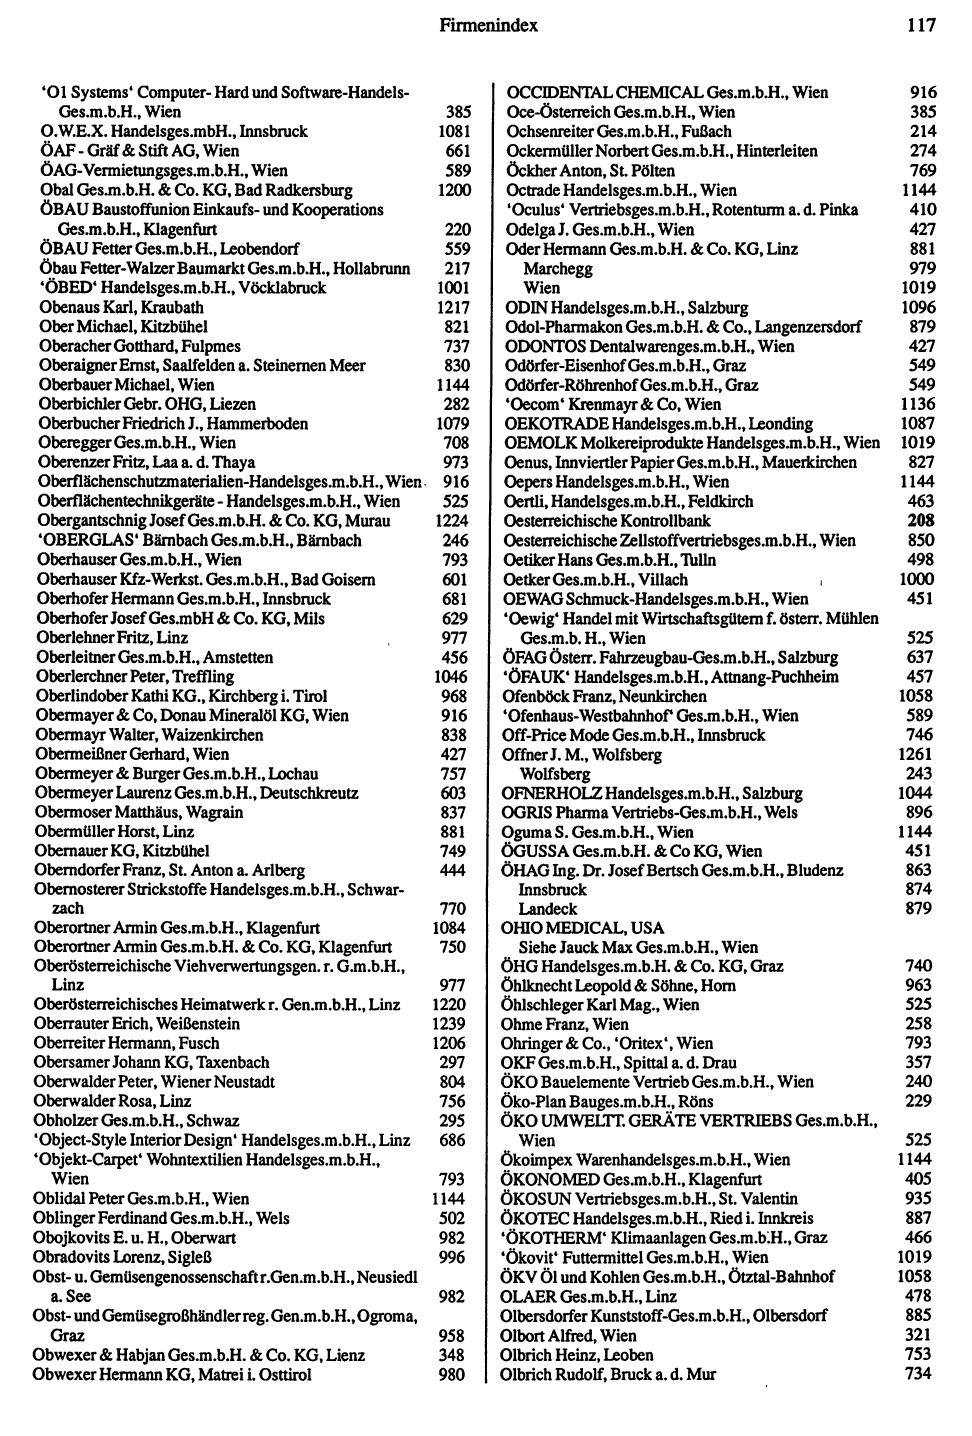 Handels-Compass 1991/92 - Seite 119